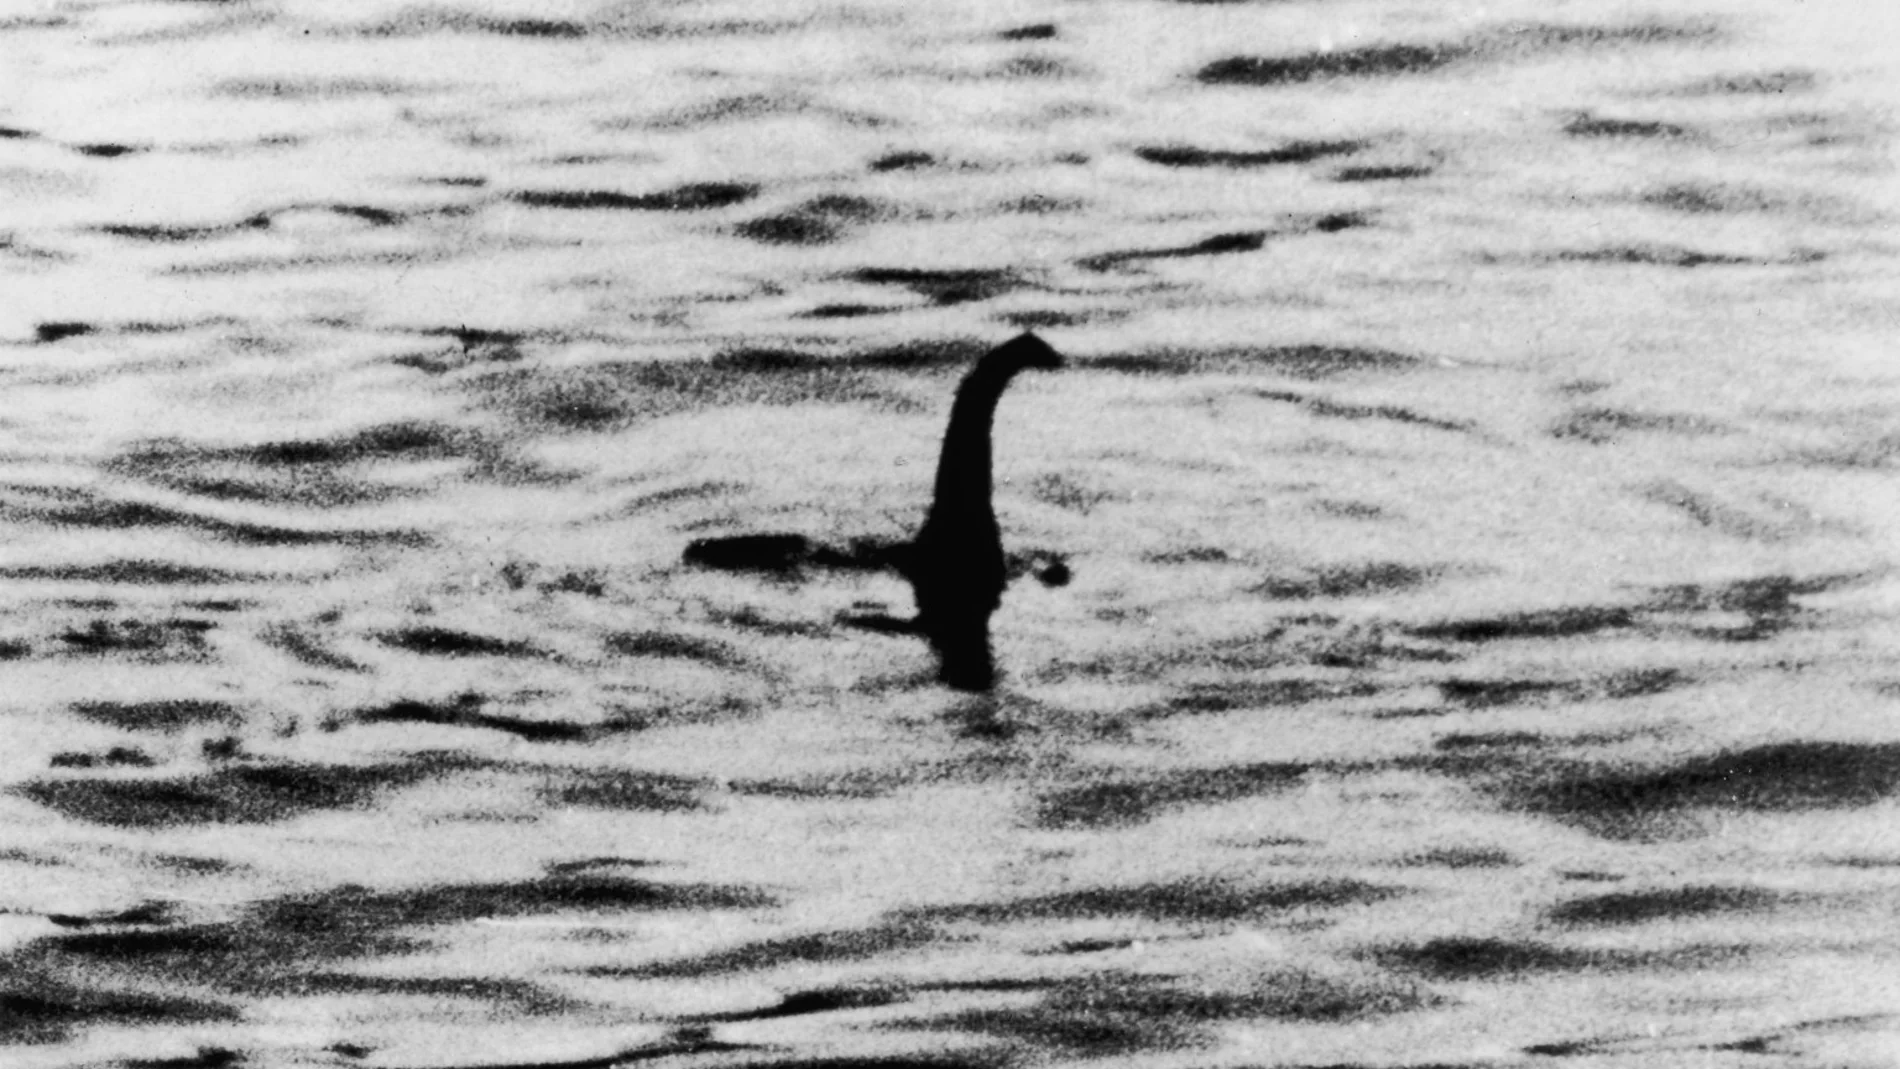 Un científico estadounidense resuelve el misterio del monstruo del lago Ness